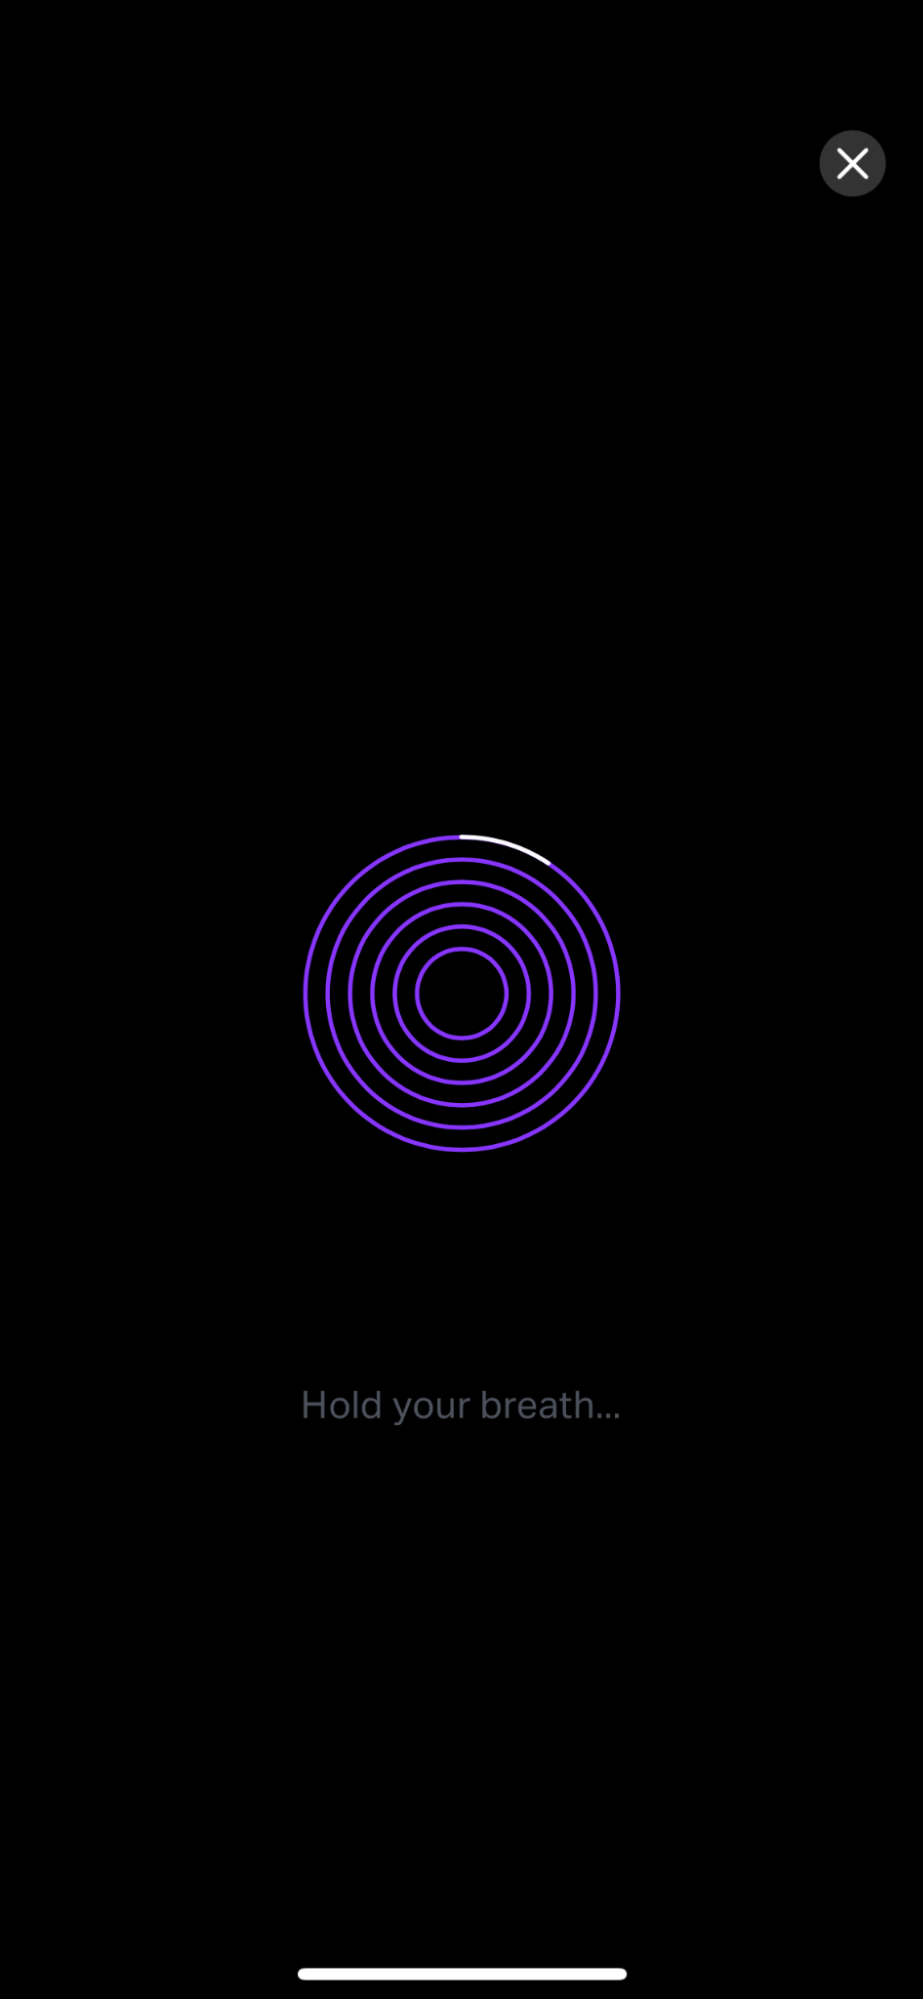 Screenshot of the app's breathwork prompts 